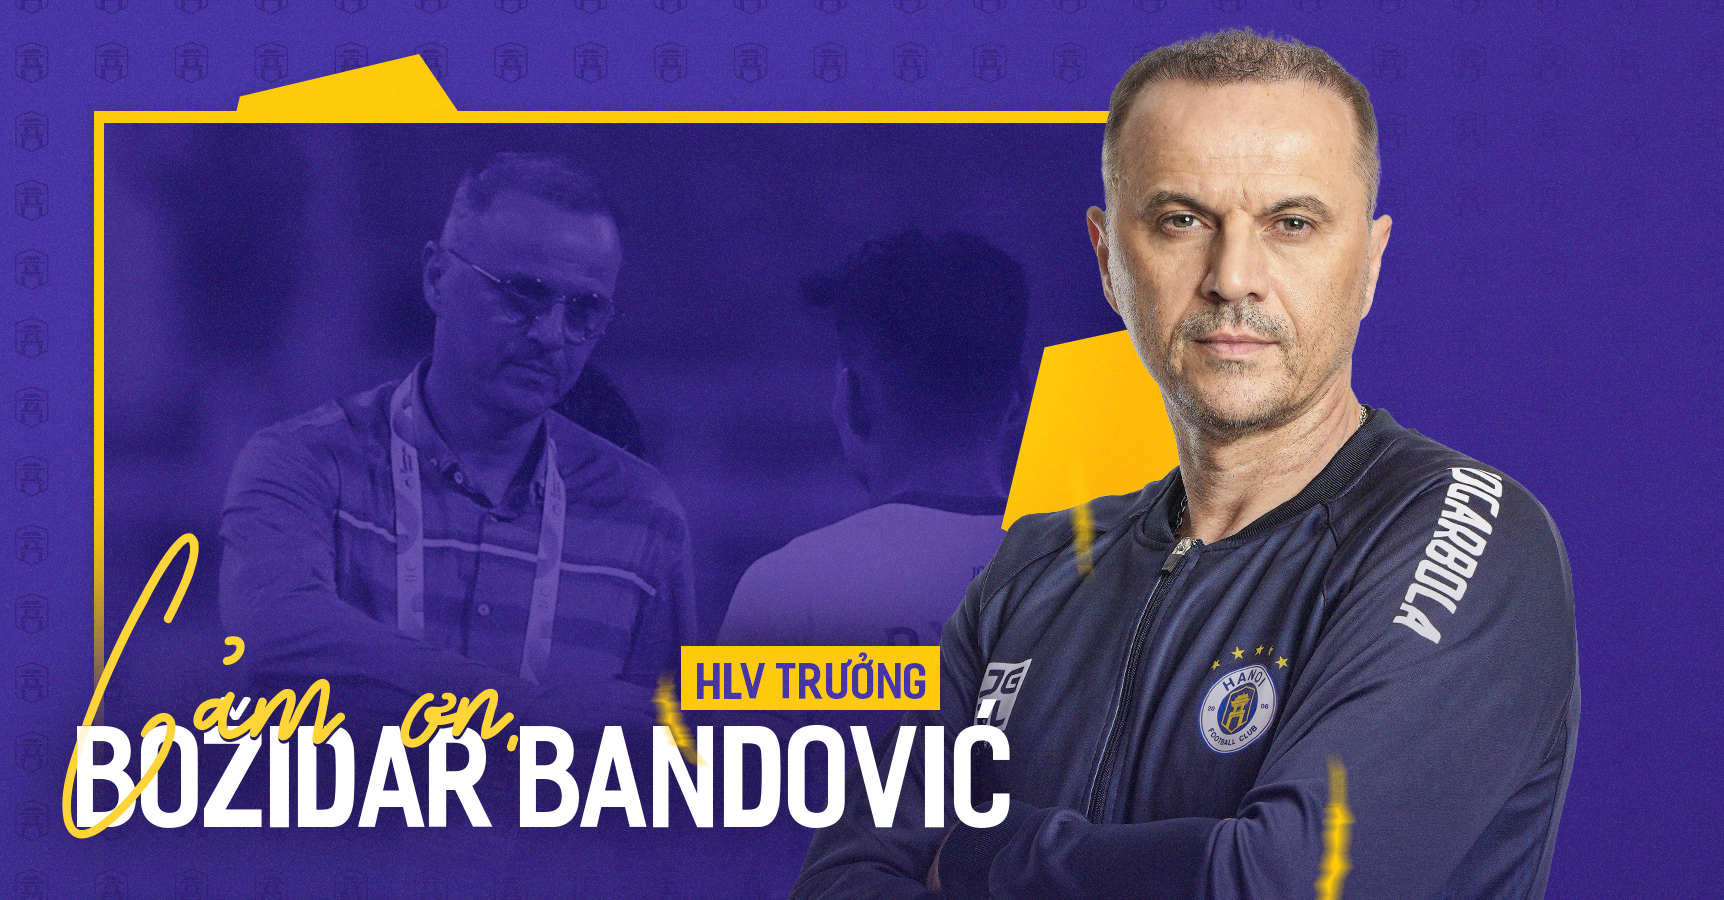 Bandovic là một HLV giỏi nhưng để thành công ở một đội bóng như Hà Nội FC lại là một câu chuyện khác